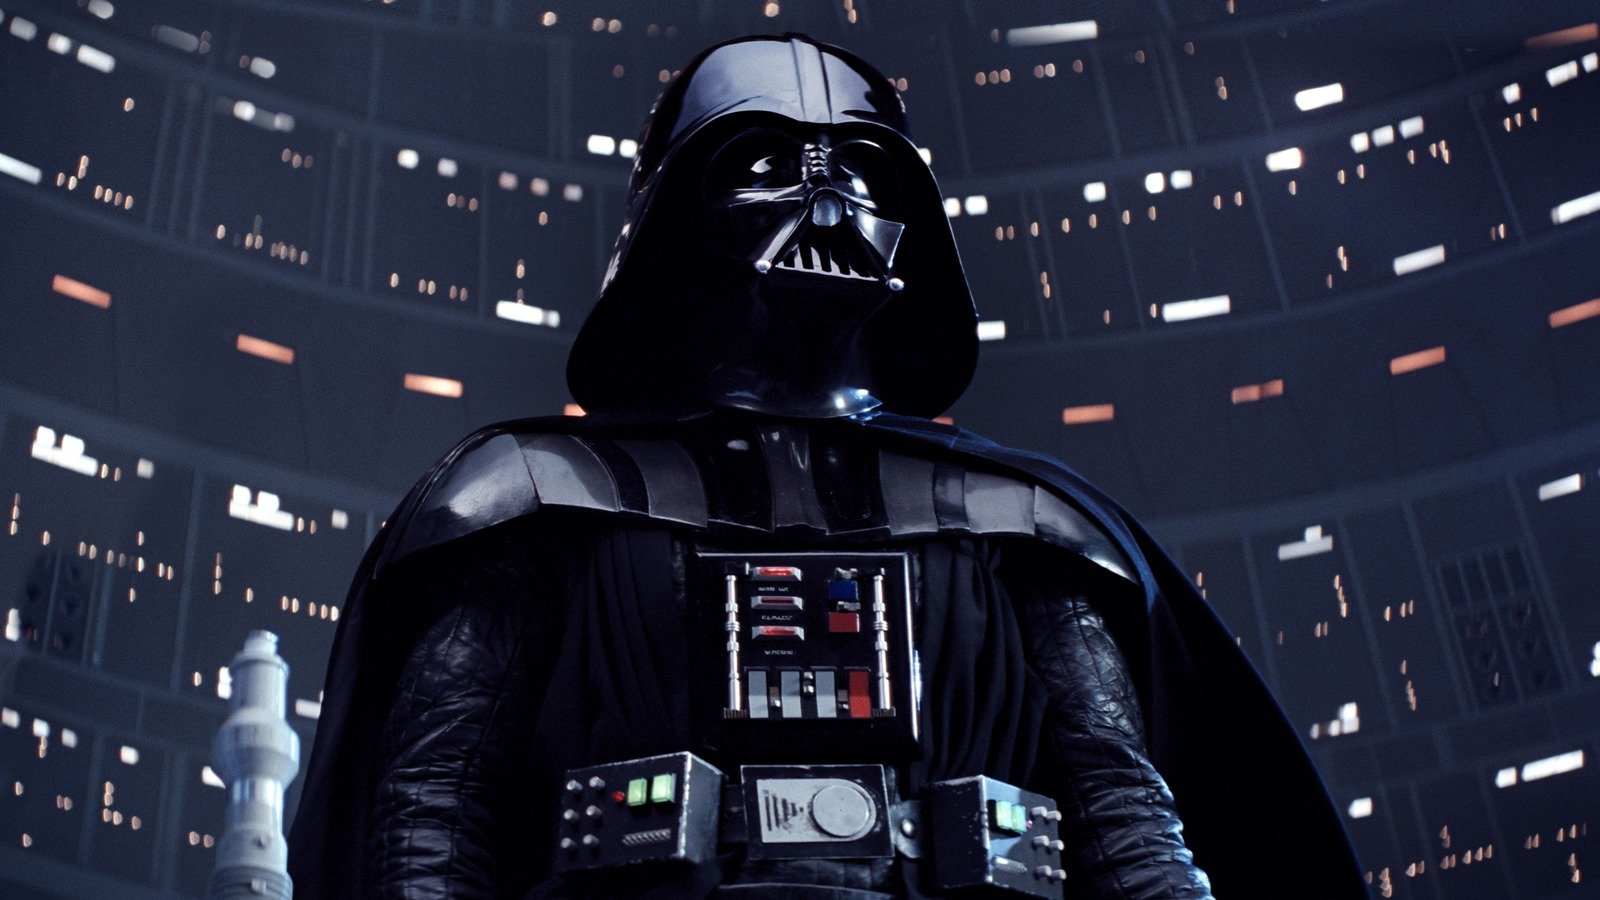 Darth Vader's Helmet Design Solved A Practical Problem In The Star Wars Script